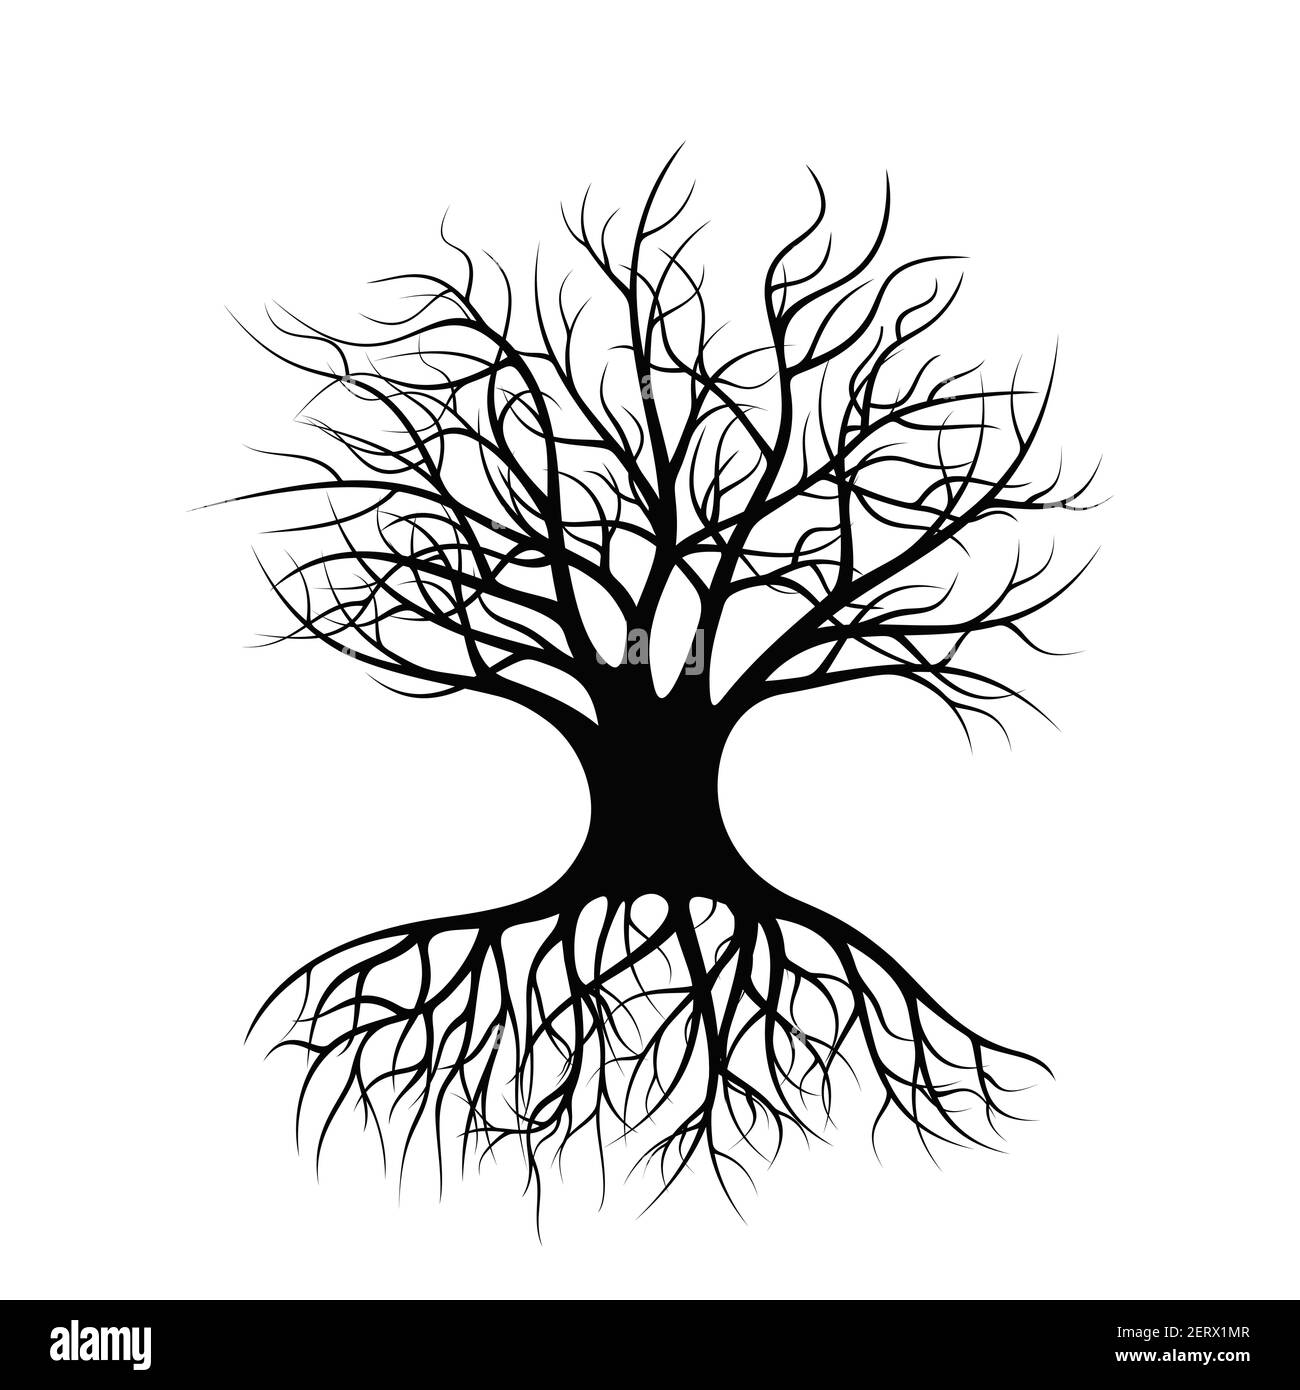 Un arbre Lonely debout avec des racines et pas de feuillage. Silhouette noire d'un arbre. Illustration de Vecteur